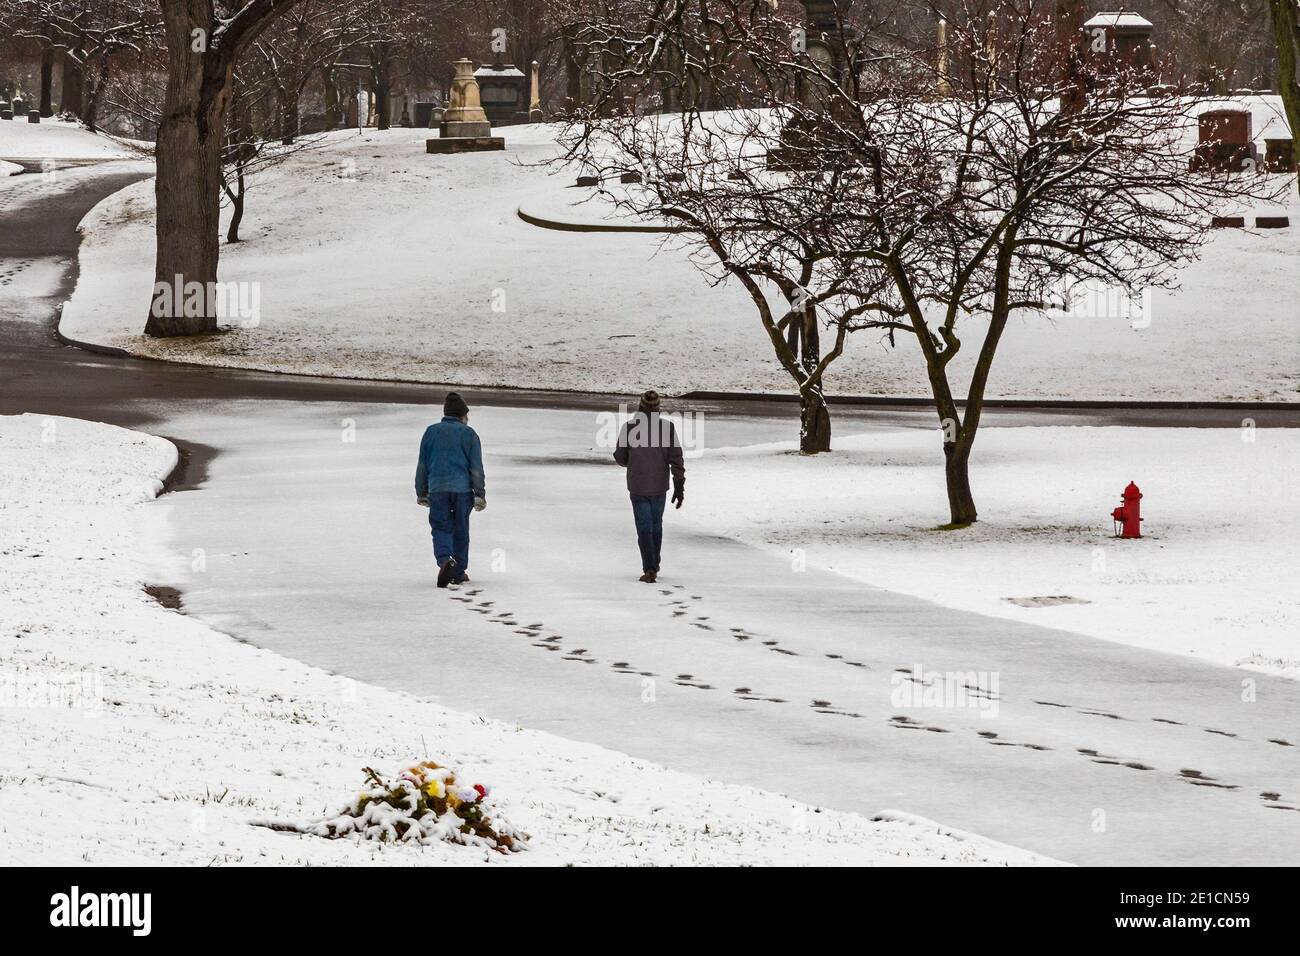 Detroit, Michigan - pendant la pandémie, deux personnes font une promenade tôt le matin socialement distancée dans le cimetière d'Elmwood. Banque D'Images